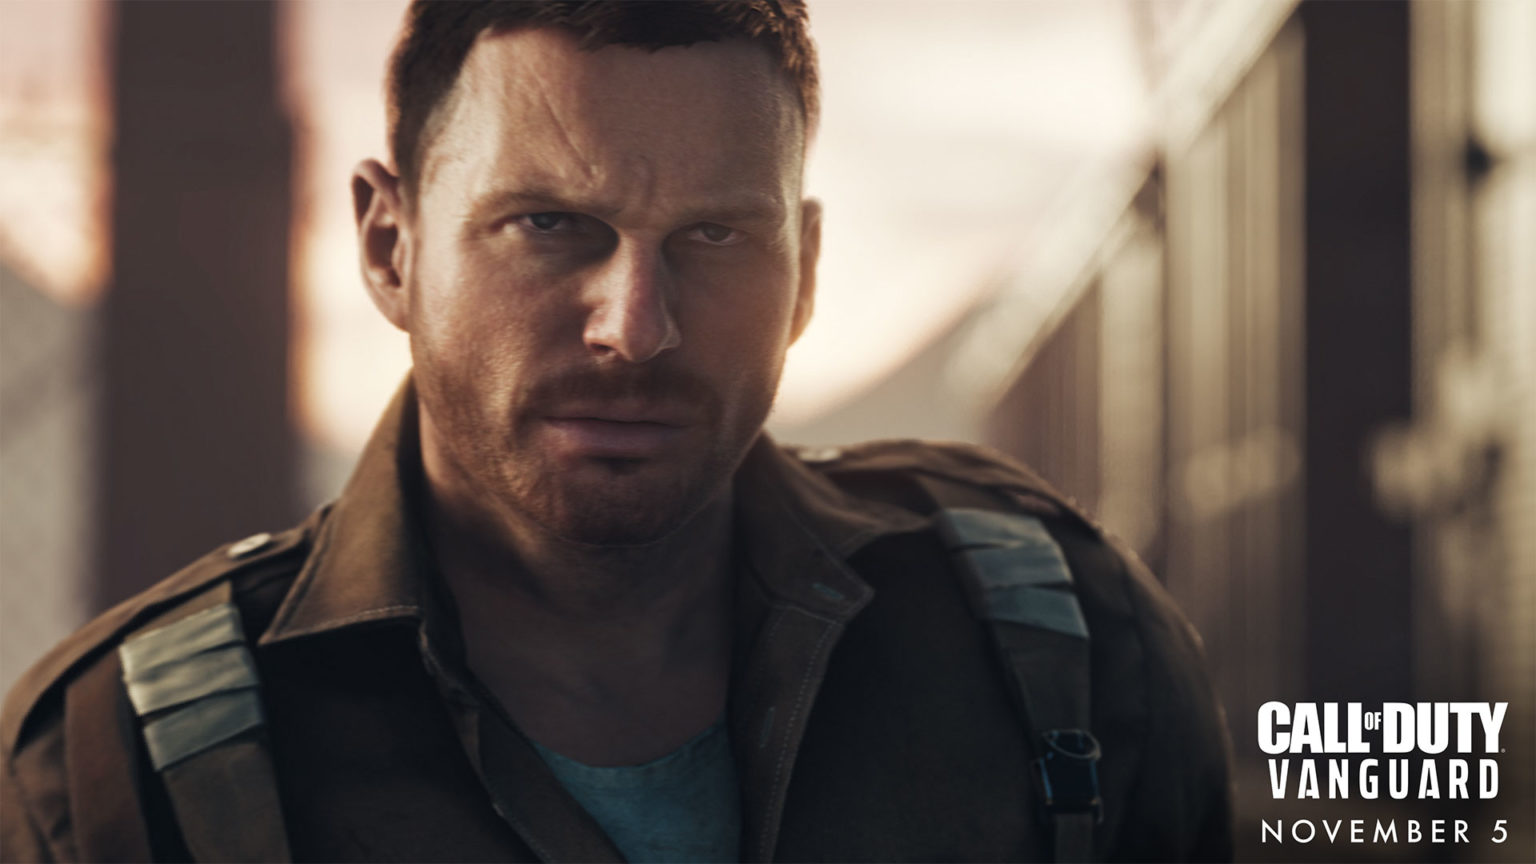 콜 오브 듀티: 뱅가드(Call of Duty: Vanguard)는 2021년 플레이스테이션 스토어에서 두 번째로 많이 다운로드된 PS5 게임이 되었습니다.